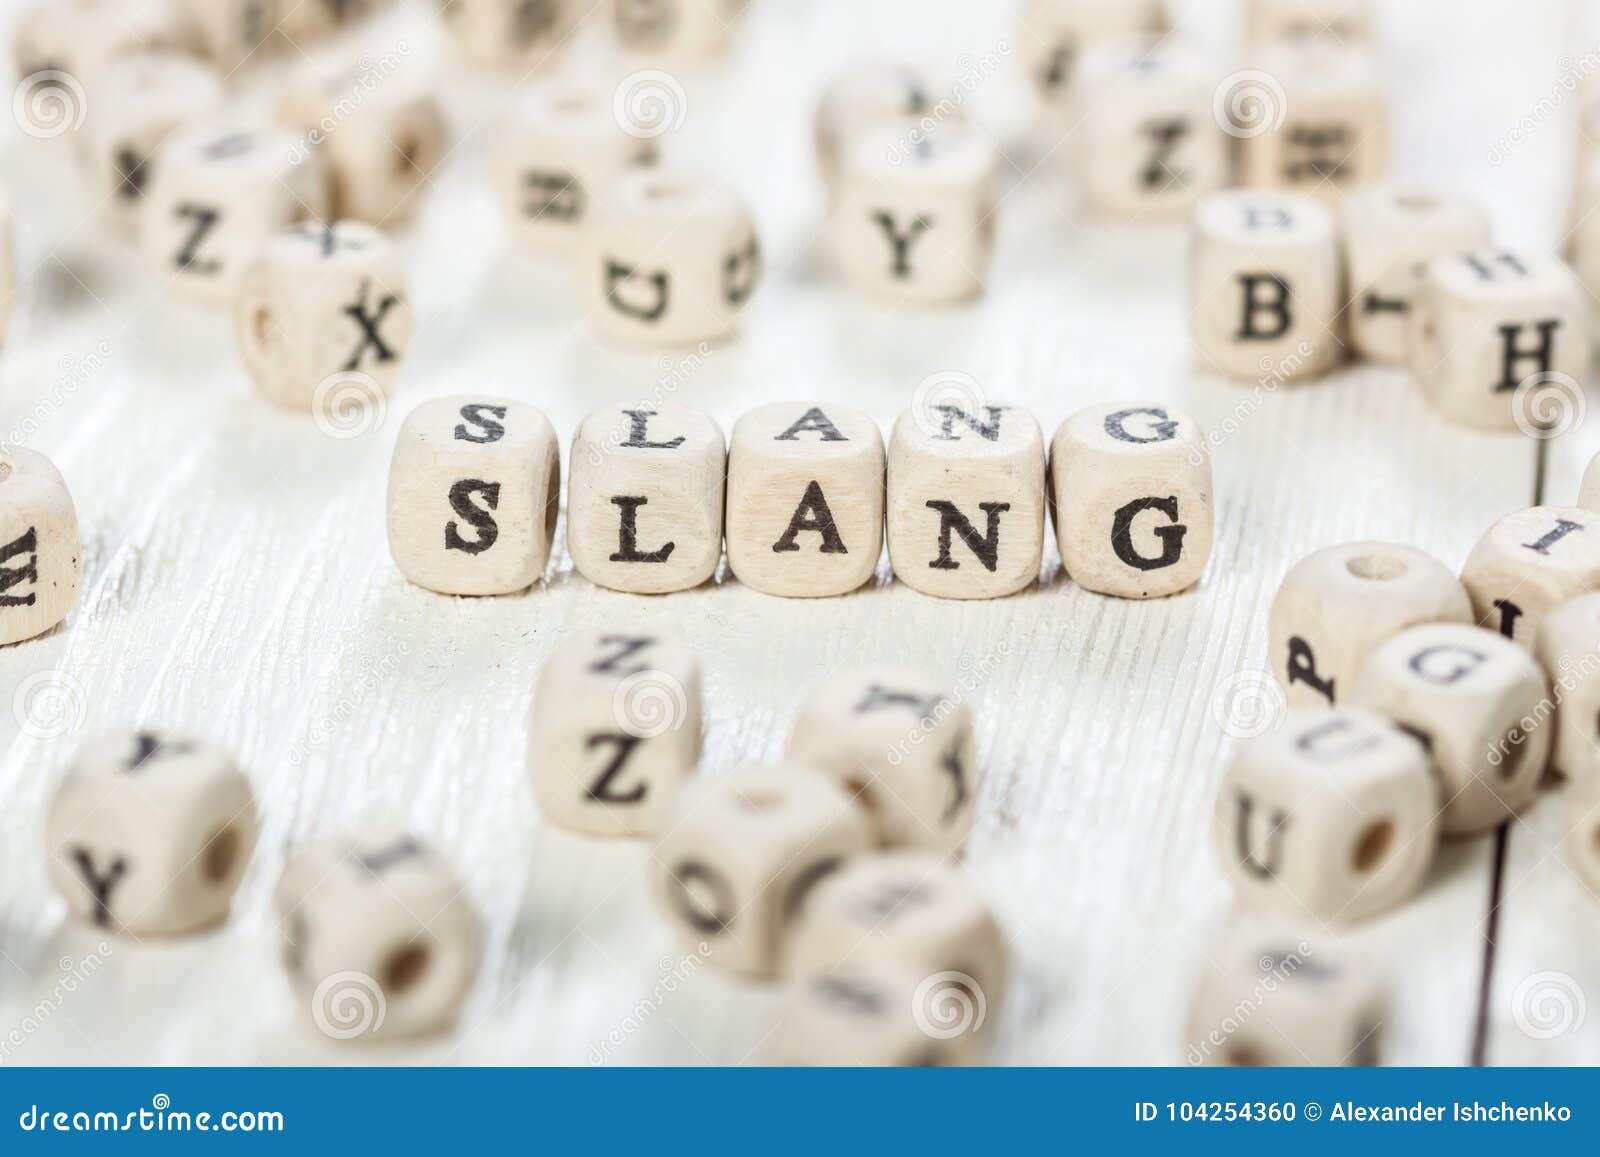 slang word written on wood block.